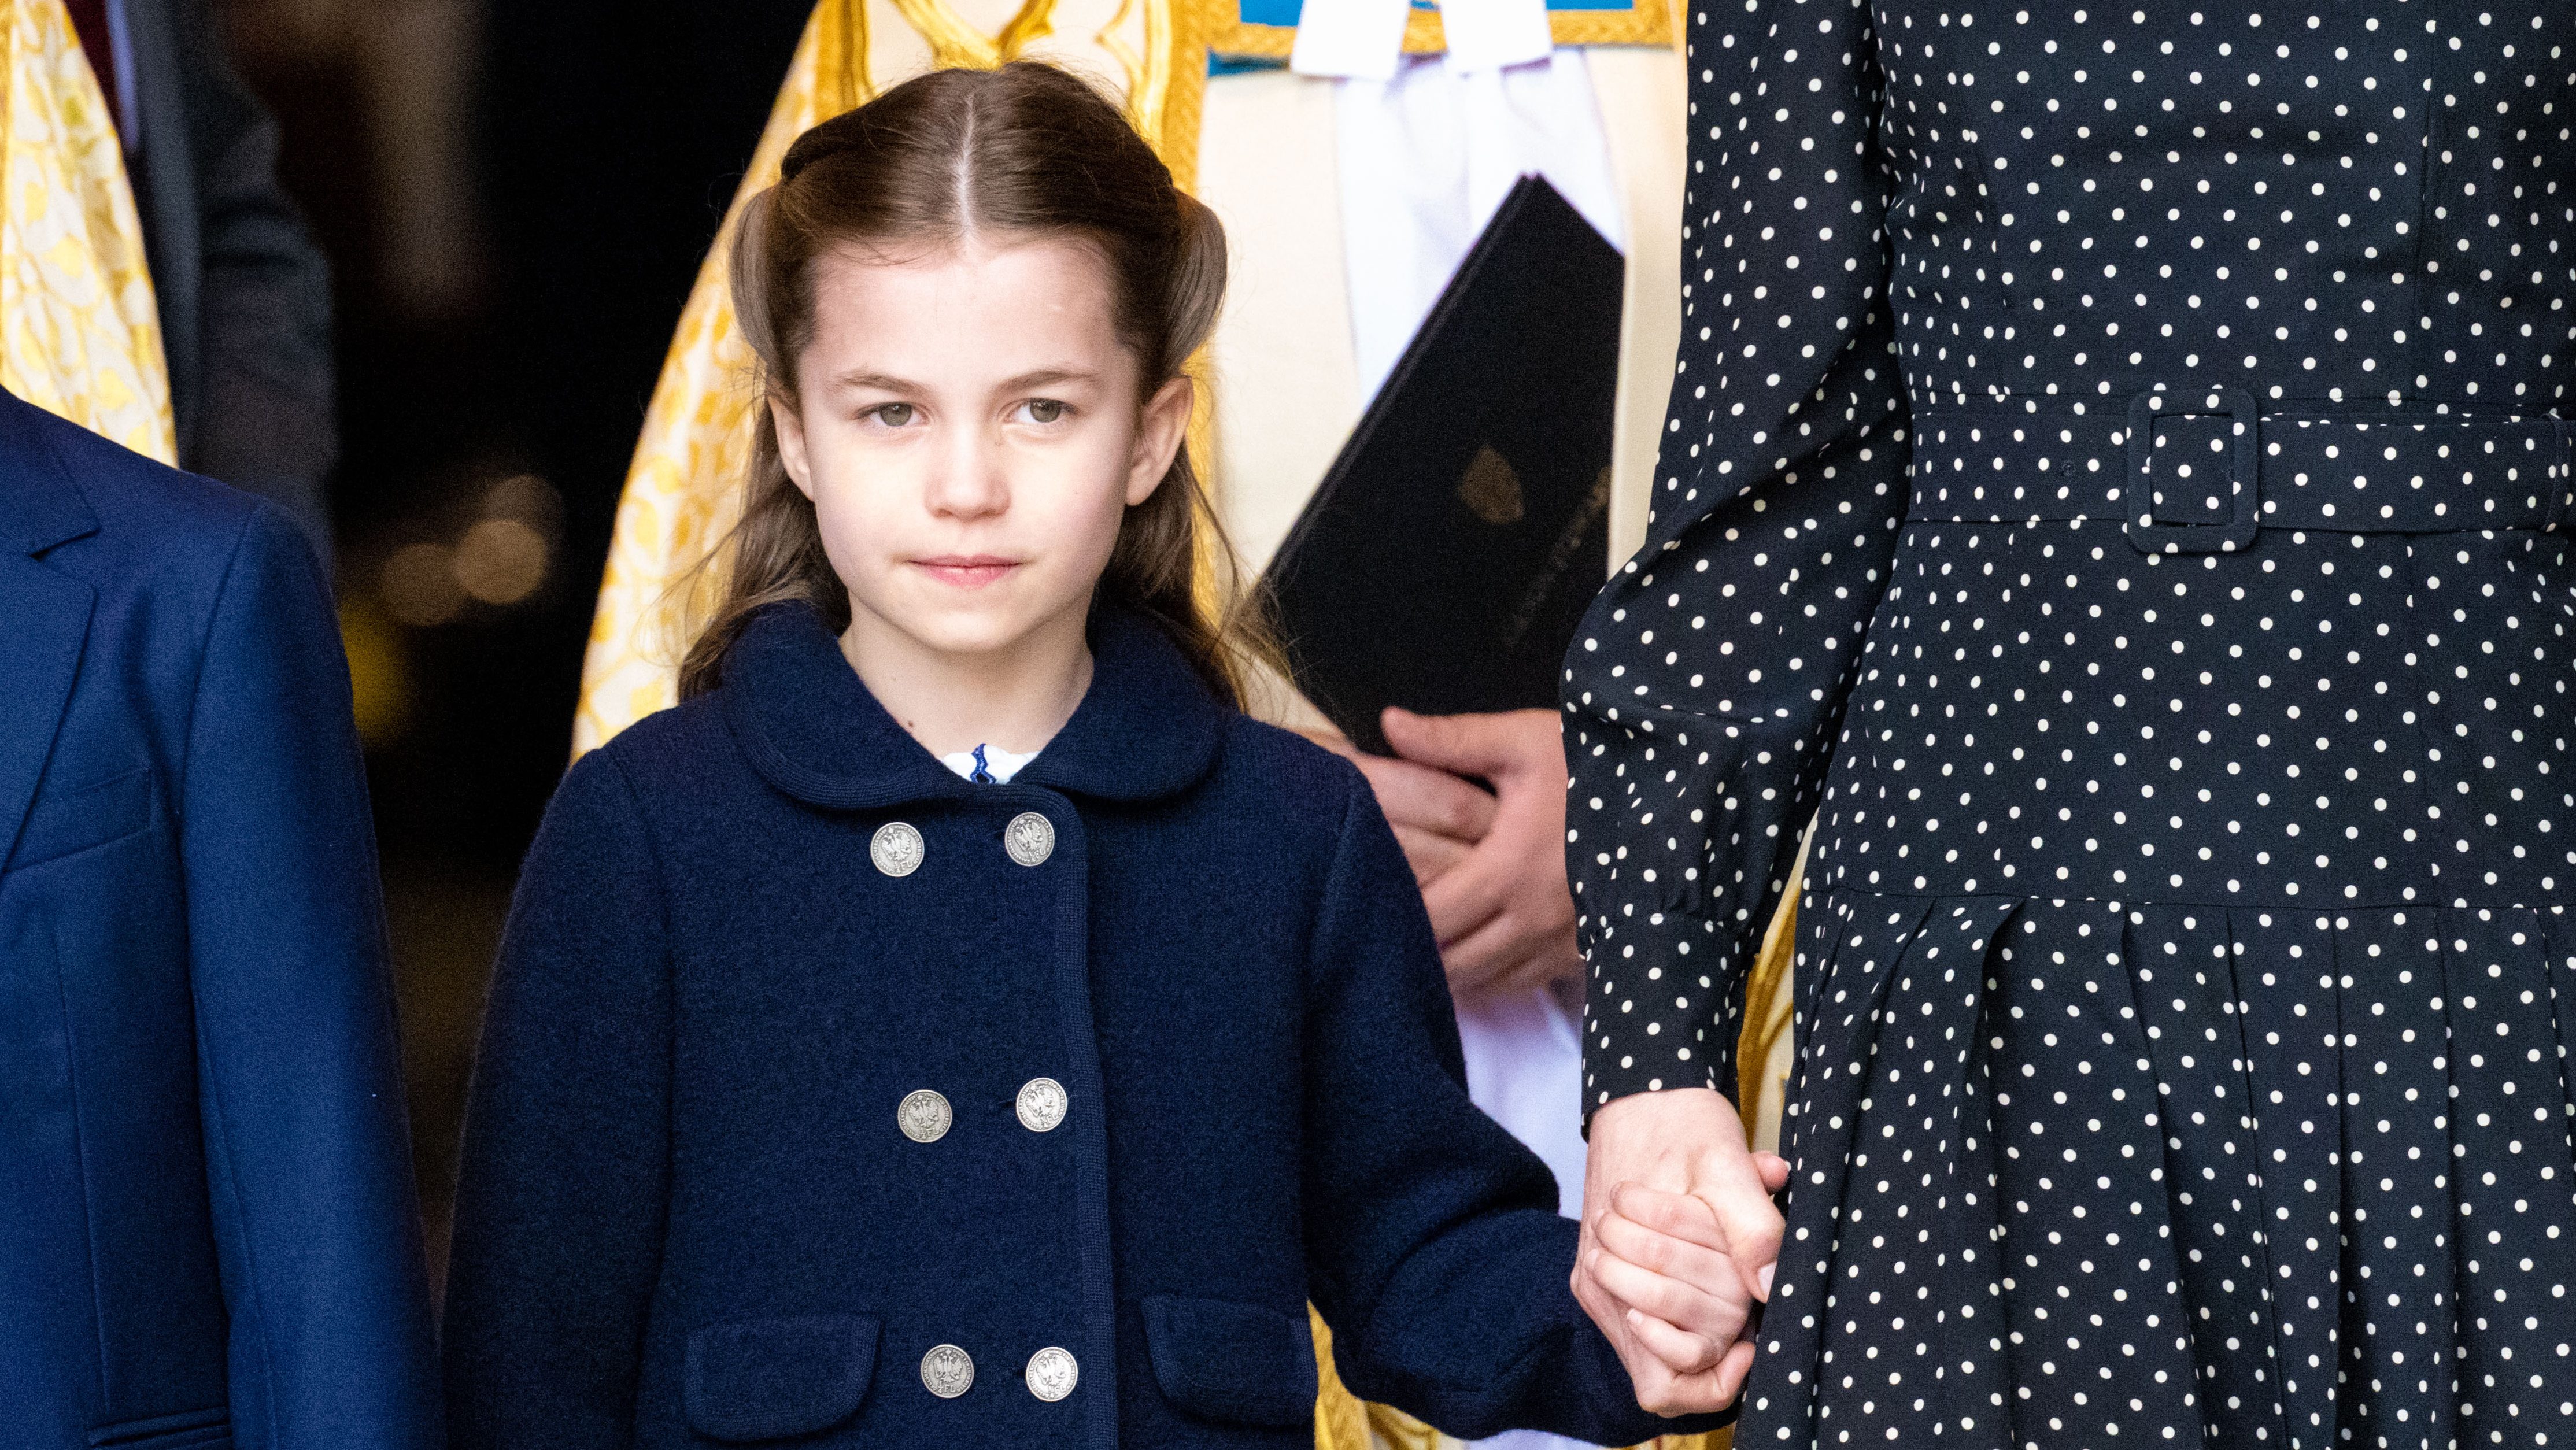 Sarolta hercegnő grimaszolt a Fülöp herceg emlékére tartott misén, már most imádják az erről készült videót